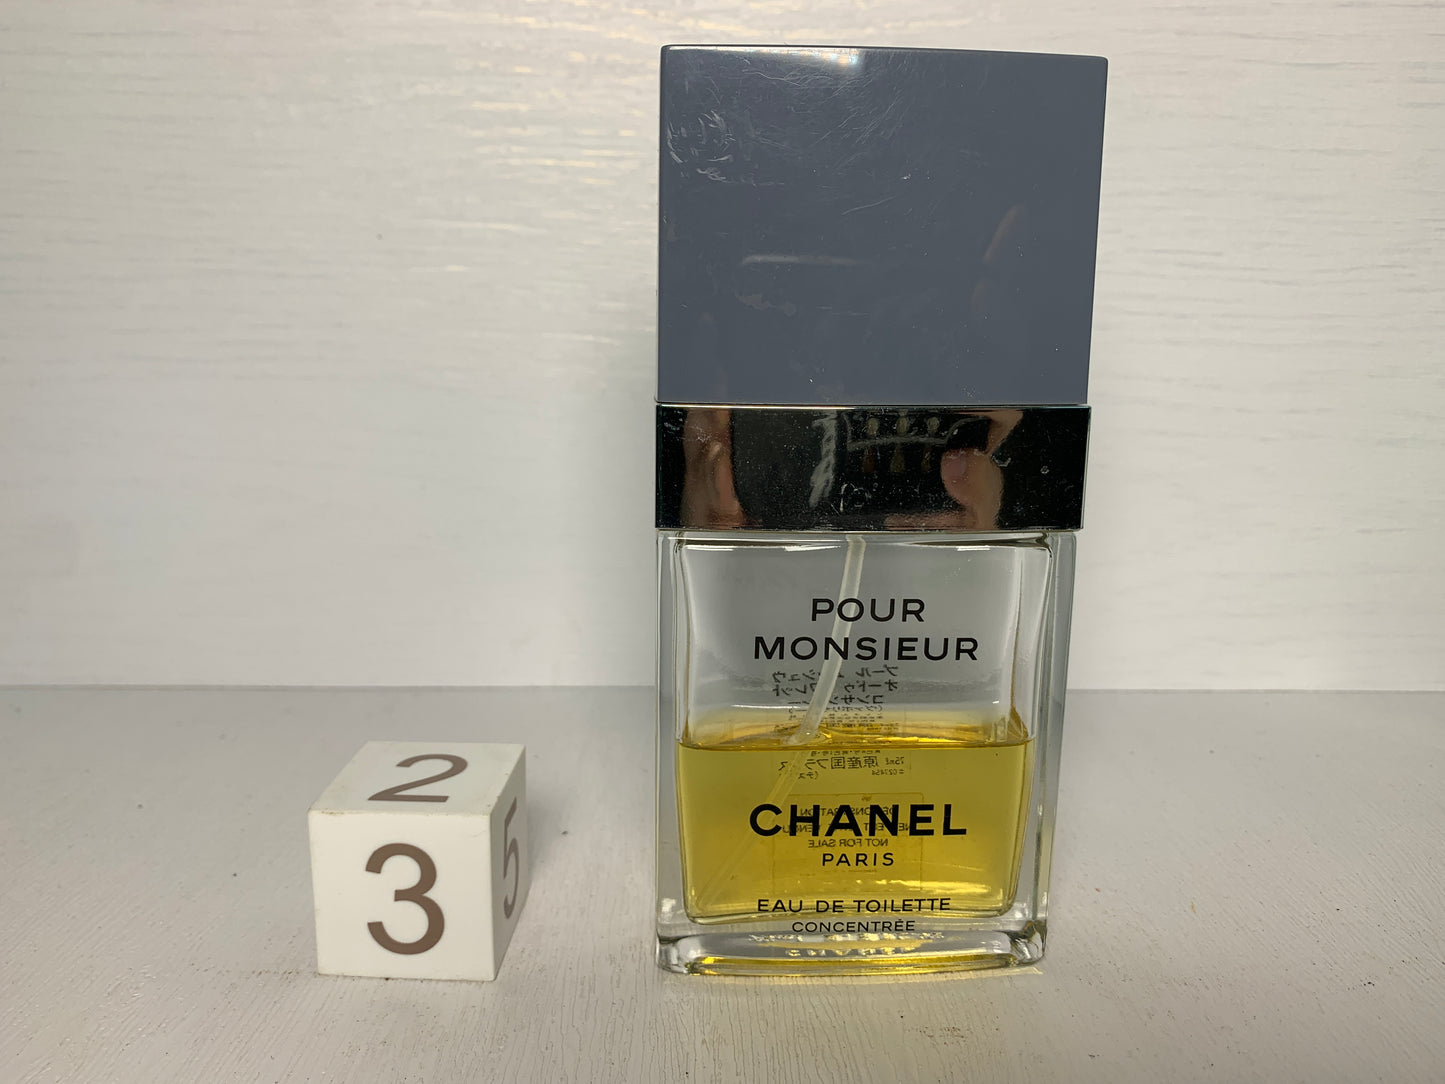 Rare Chanel Pour Monsieur Concentree Eau de toilette EDT 75ml 2.5 oz - 3DEC